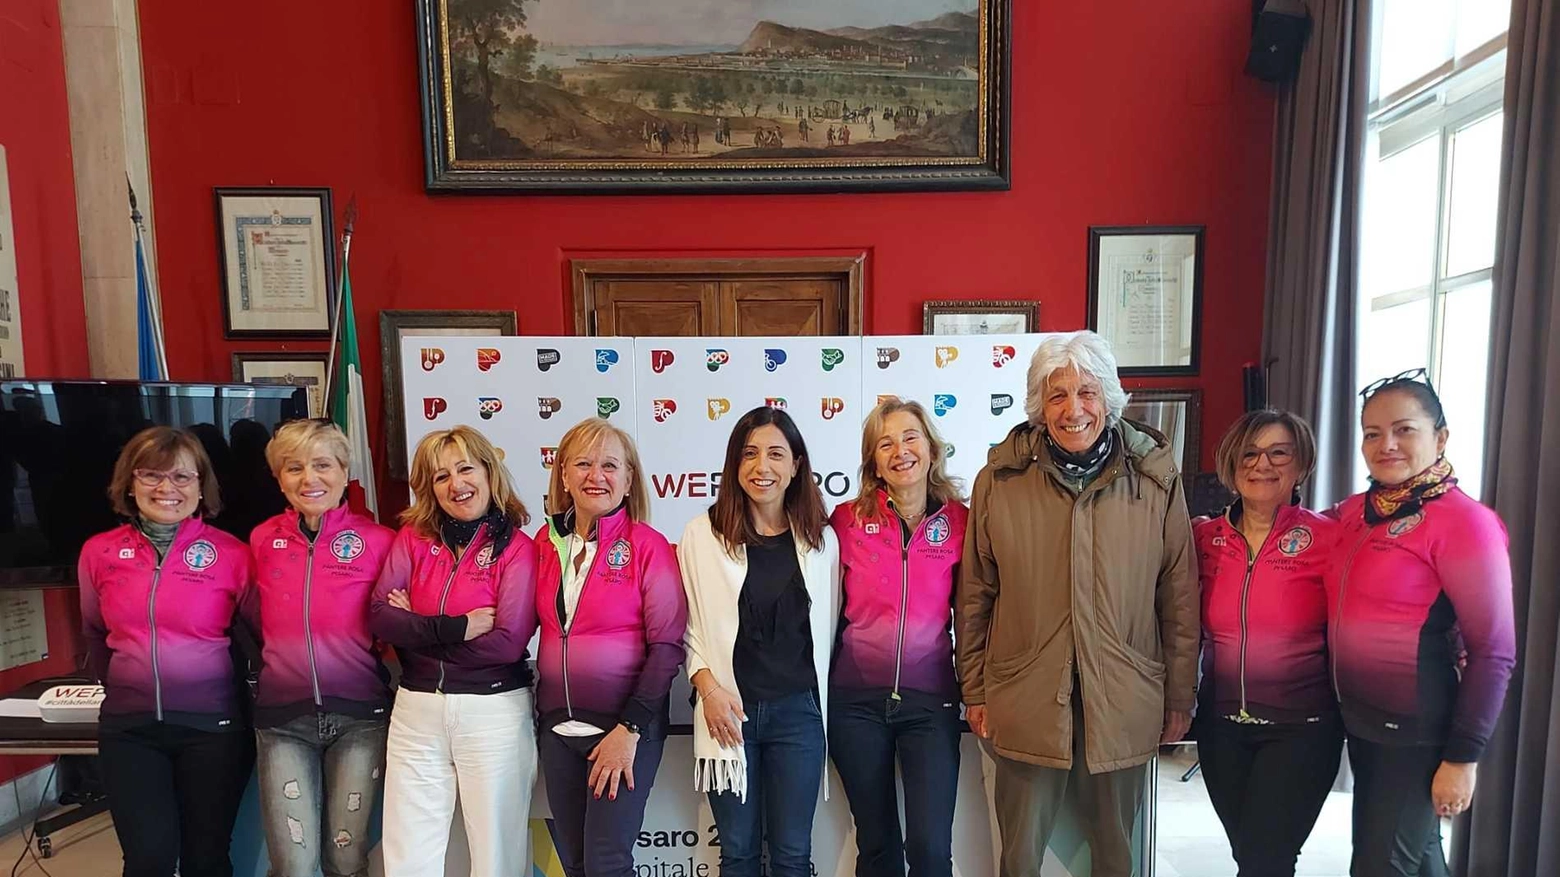 La 2ª edizione della Cronoscalata "Trofeo San Bartolo" organizzata dalle Pantere Rosa promuove lo sport e la solidarietà femminile, con una gara emozionante e una festa finale.